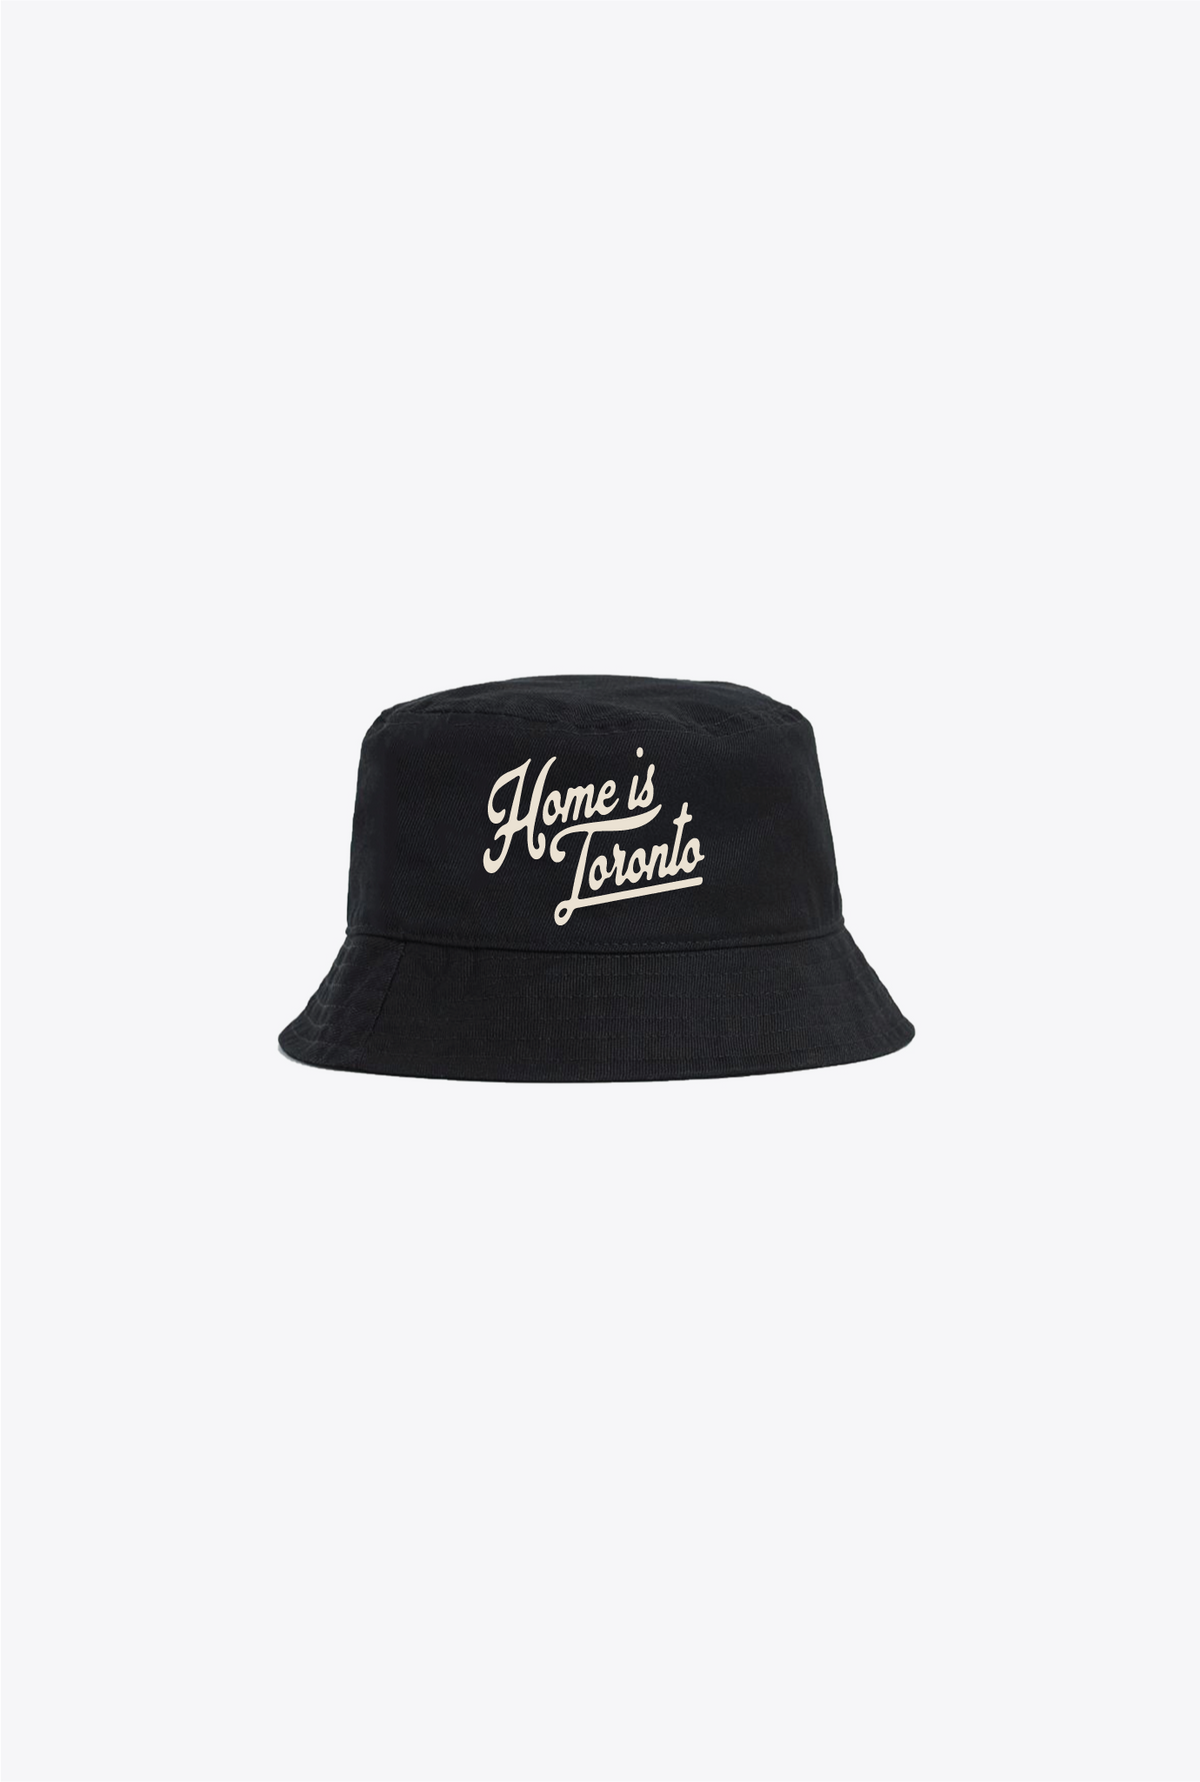 Home is Toronto Bucket Hat - Black